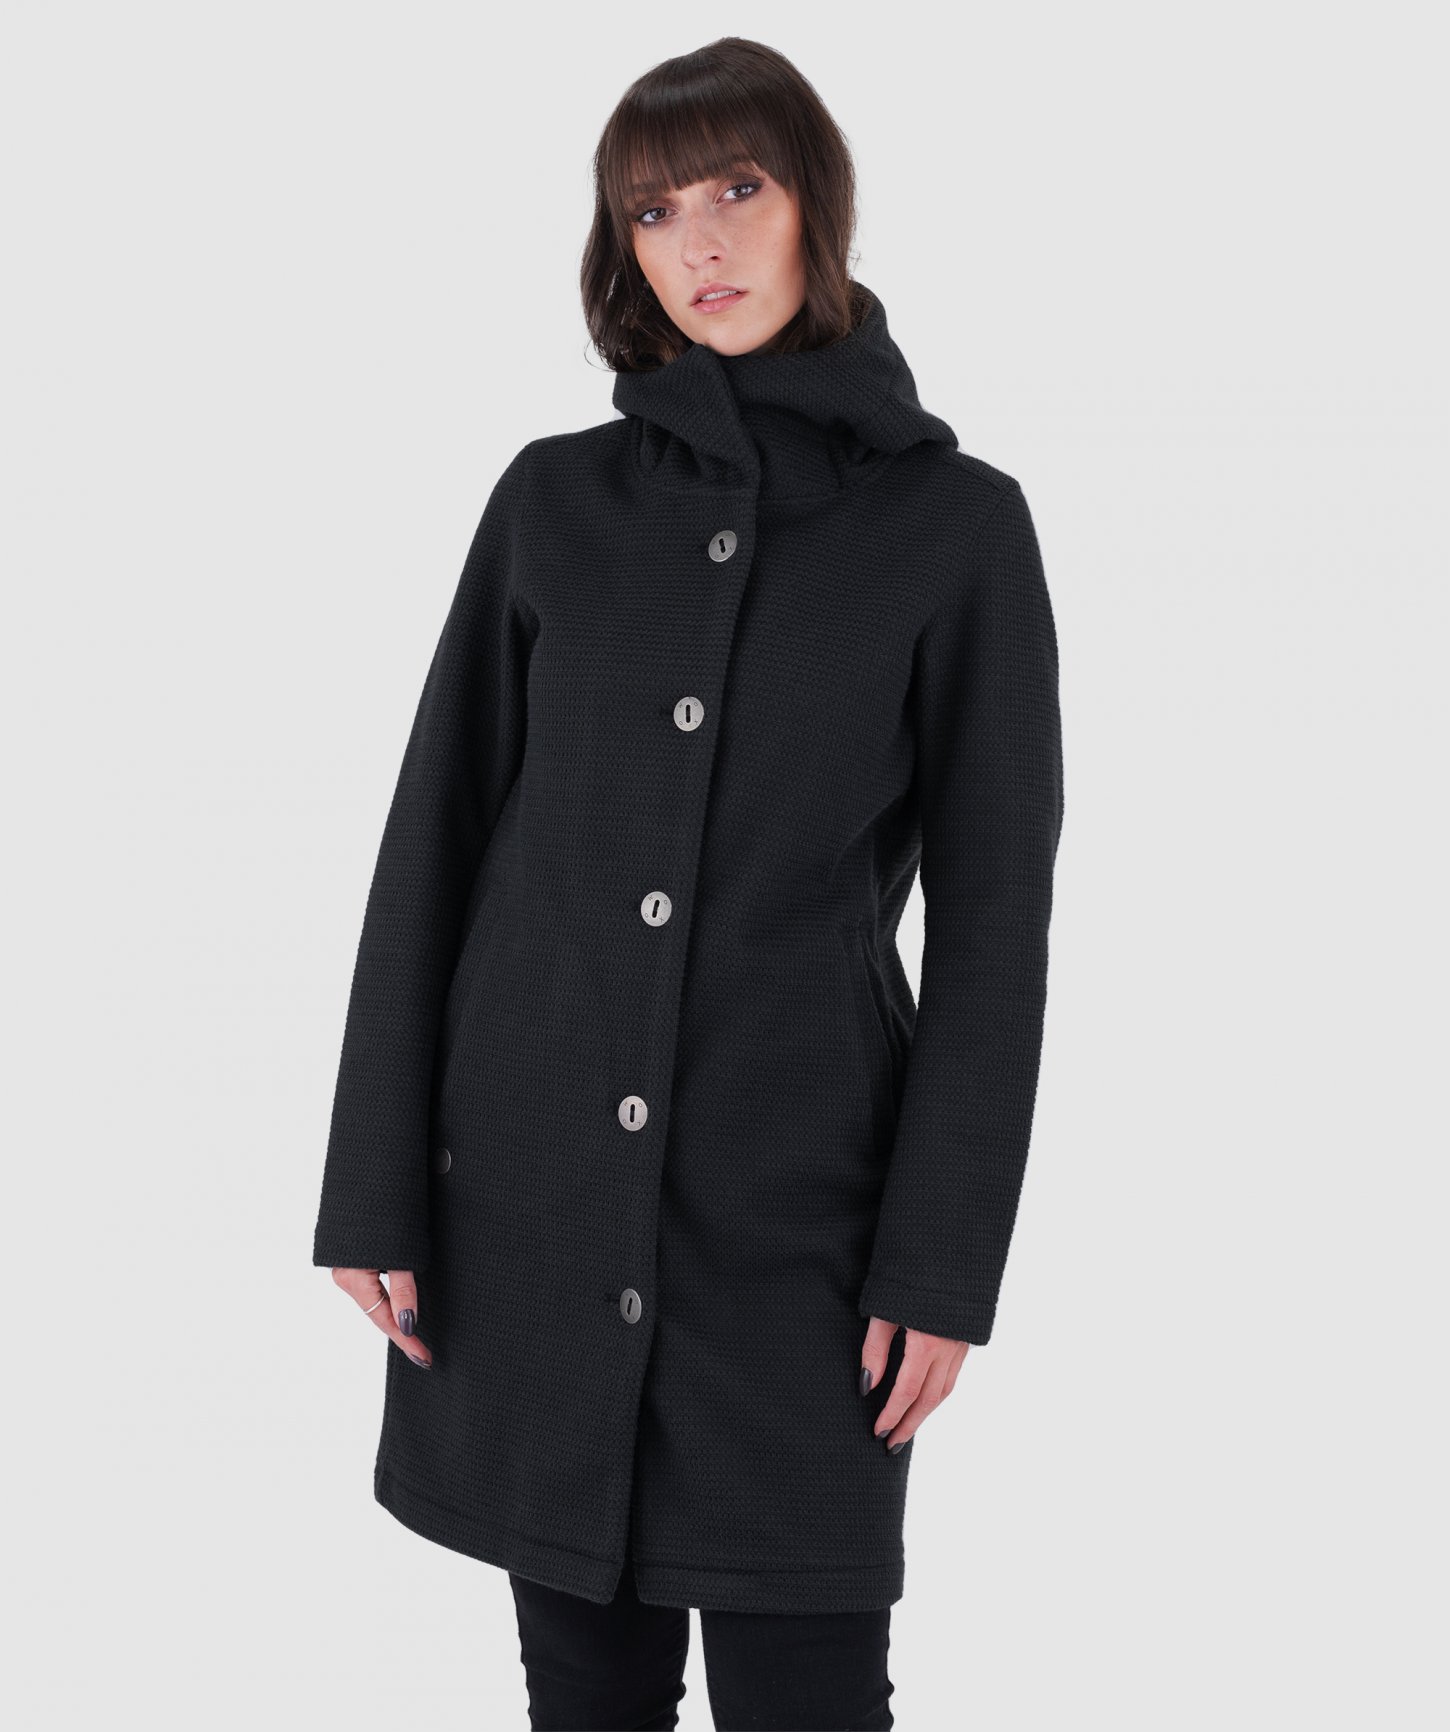 Woolshellový kabát Harlem  Black Beauty